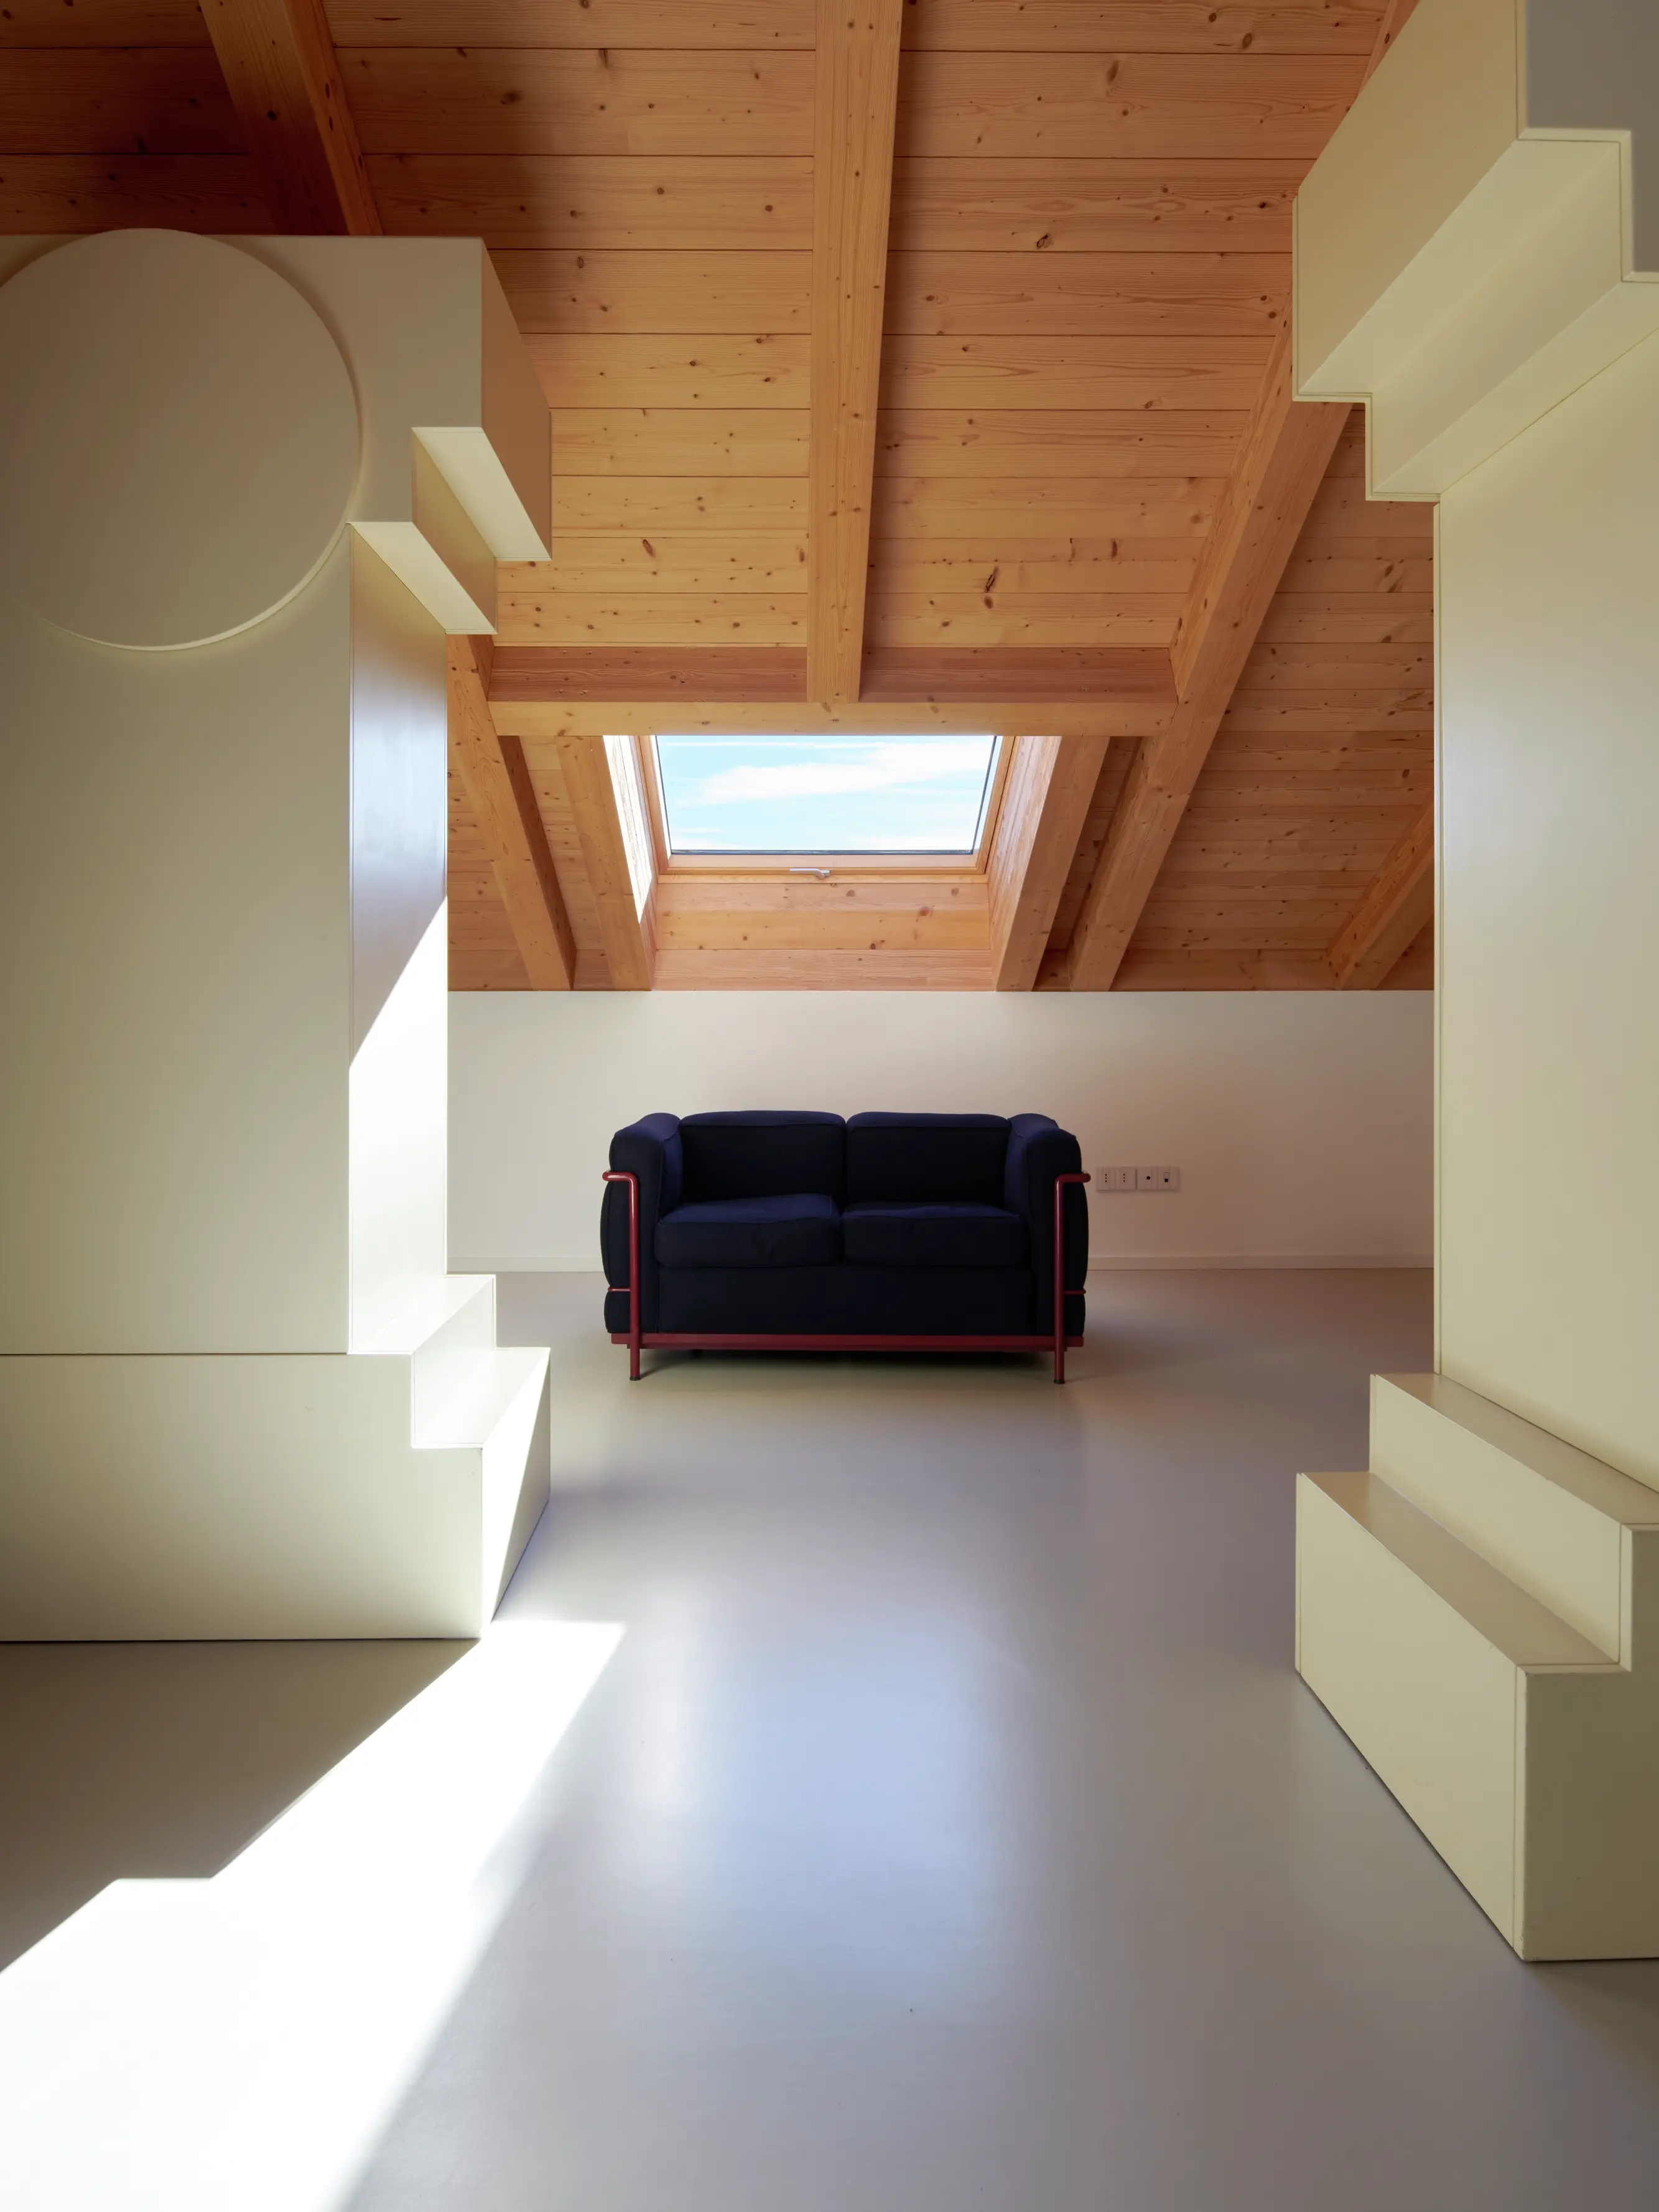 Salon lumineux sous les combles avec fenêtre VELUX, plafond en bois et canapé bleu.